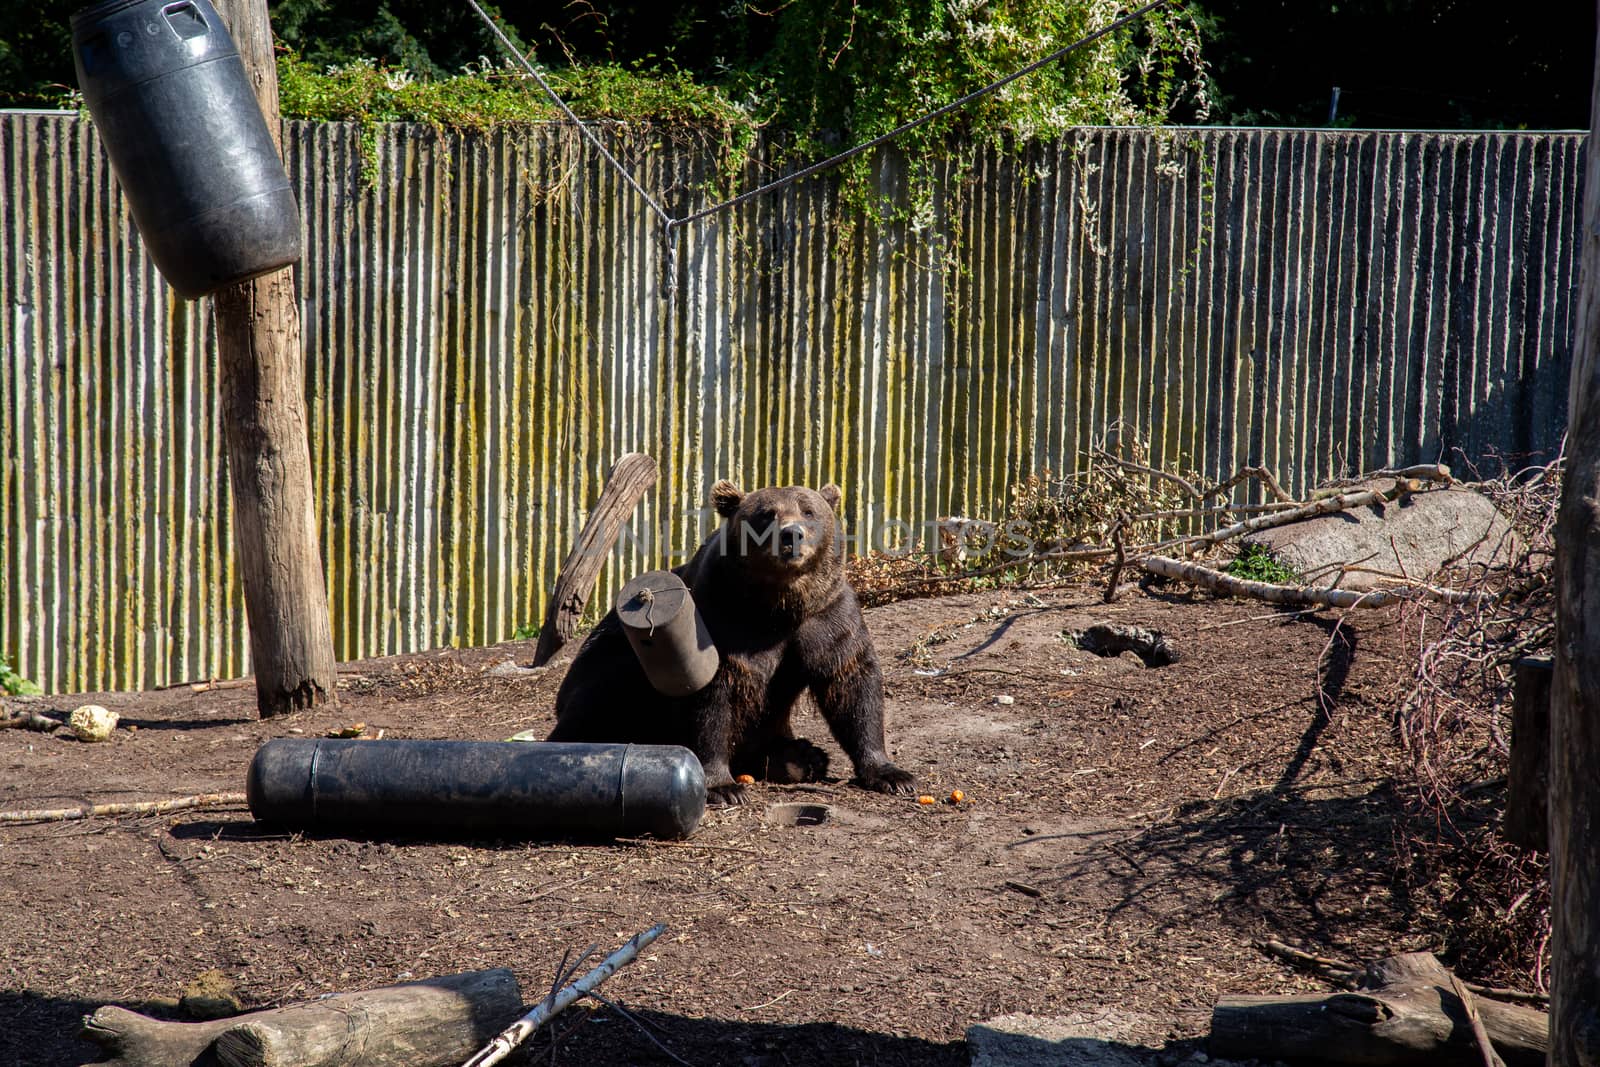 Brown Bear in Copenhagen Zoo by oliverfoerstner